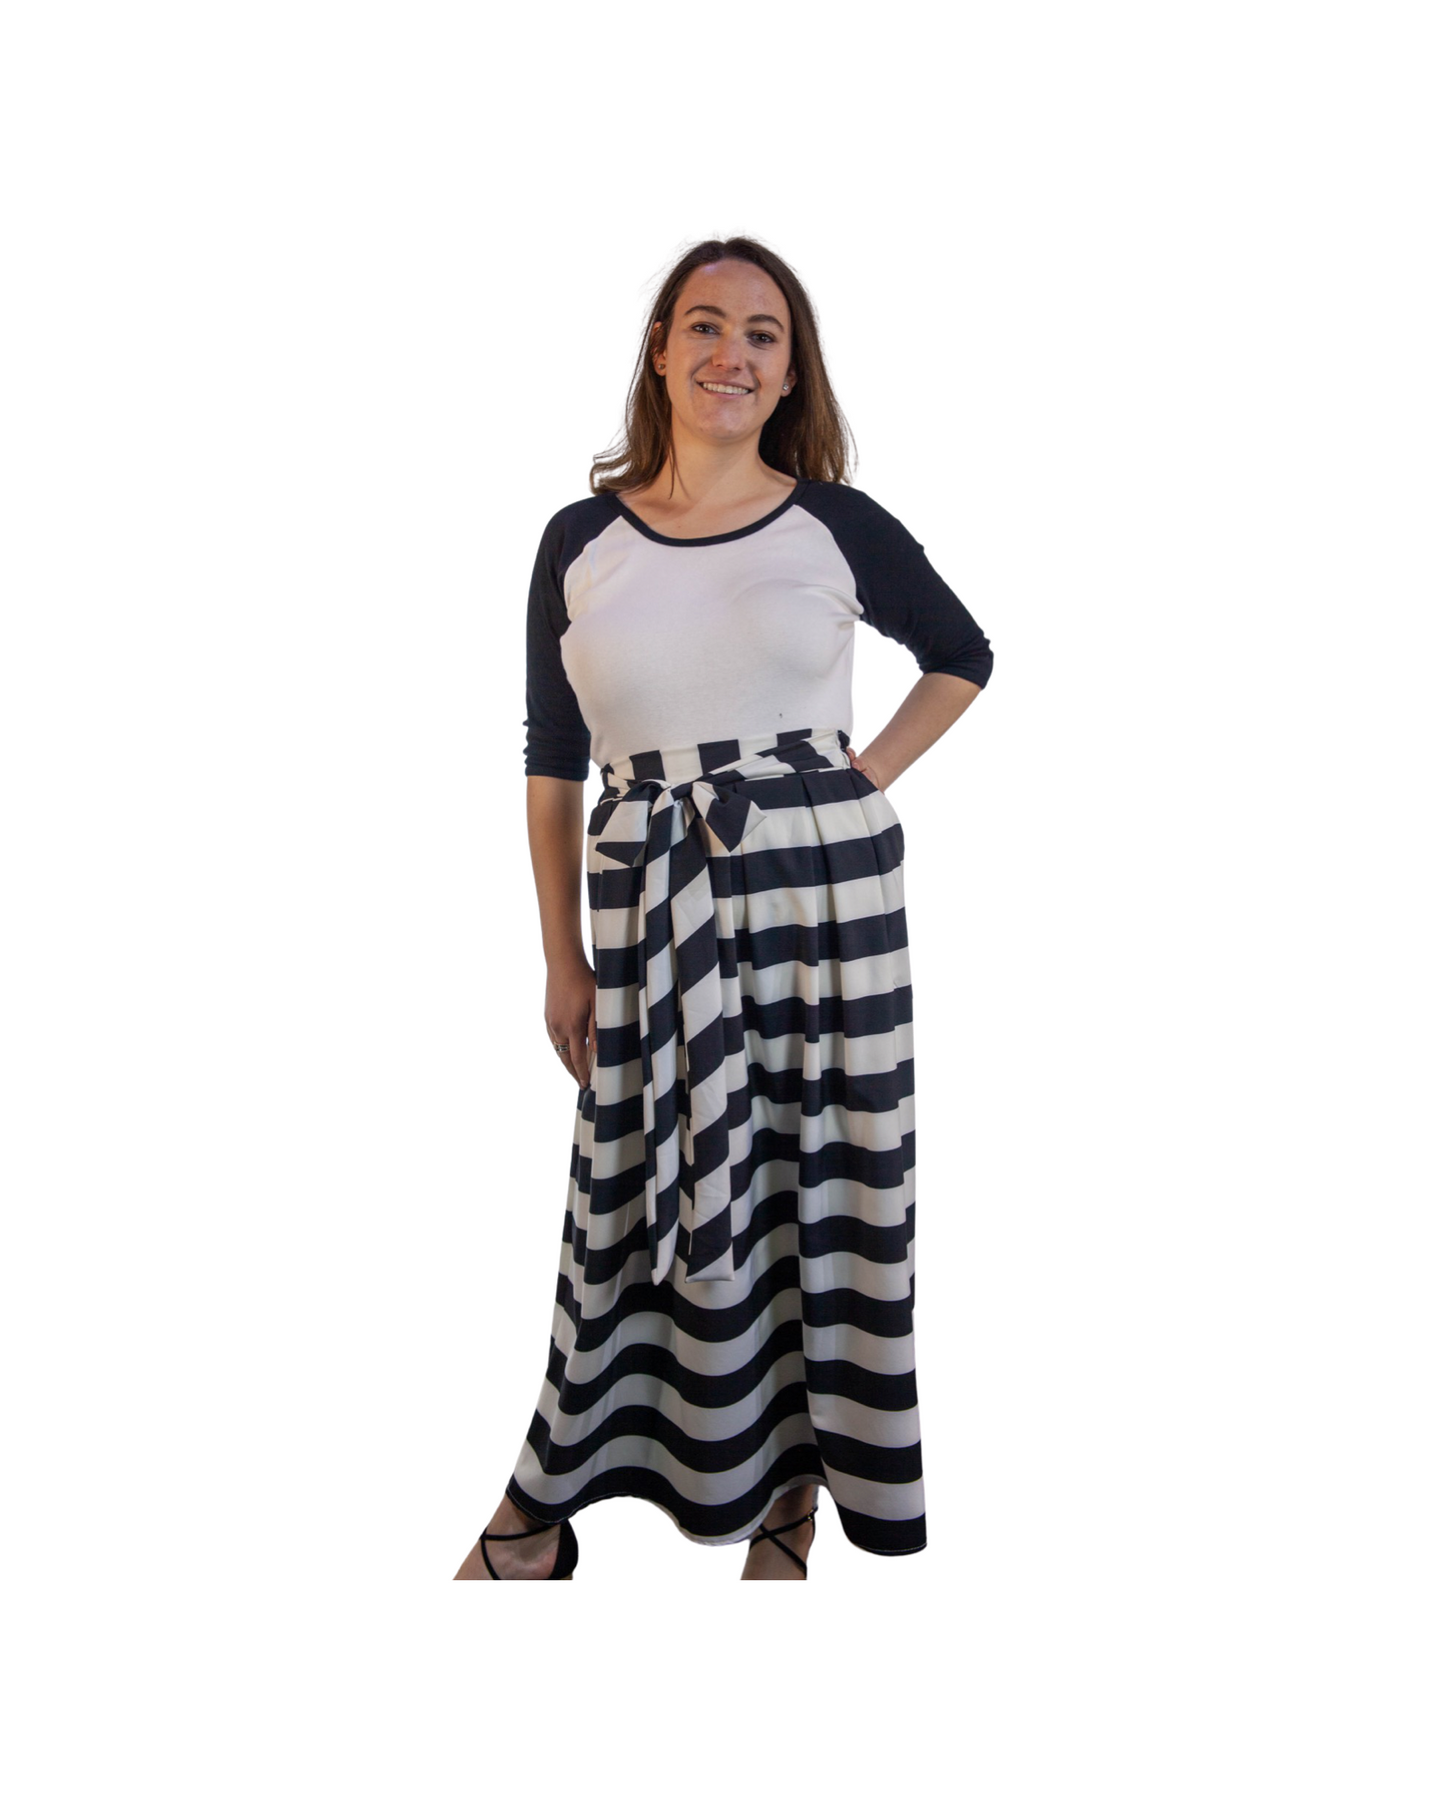 Skirt - Black and White Stripes